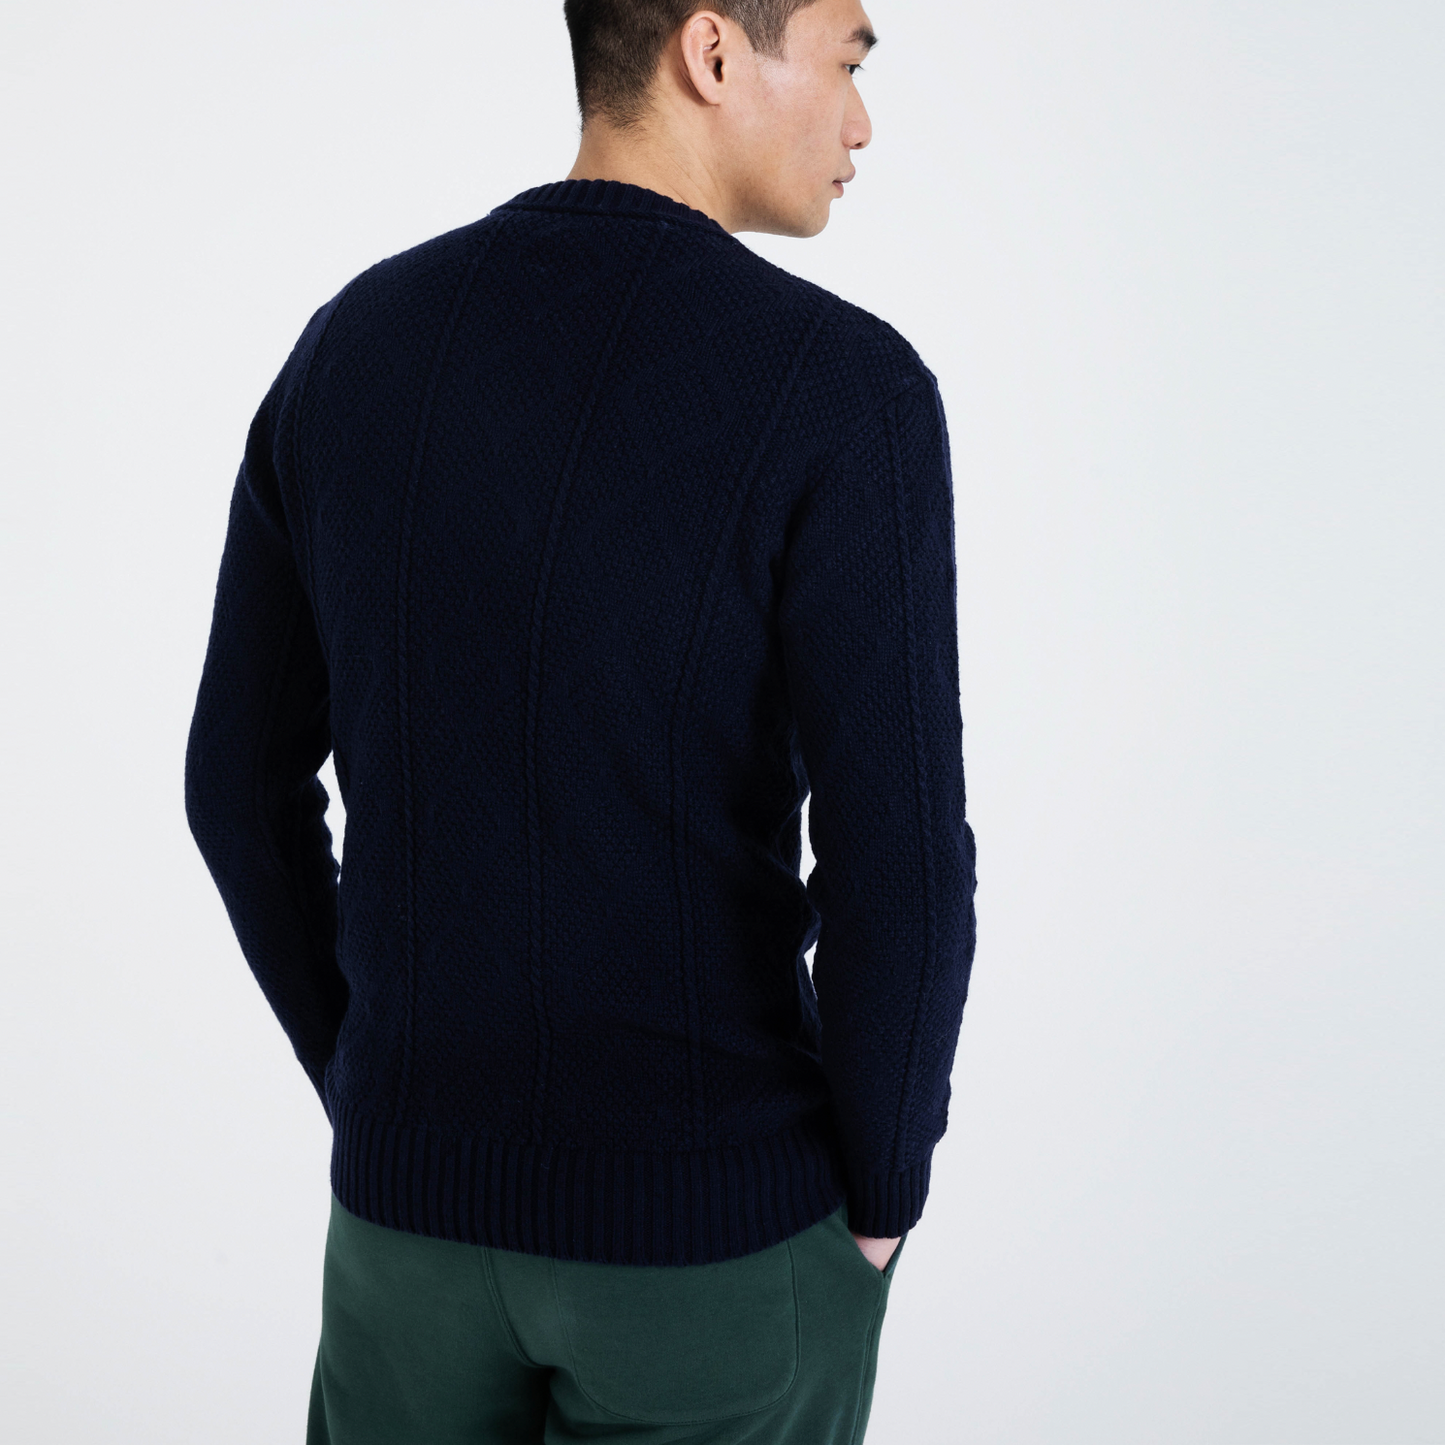 The Circular Cashmere Aran Sweater